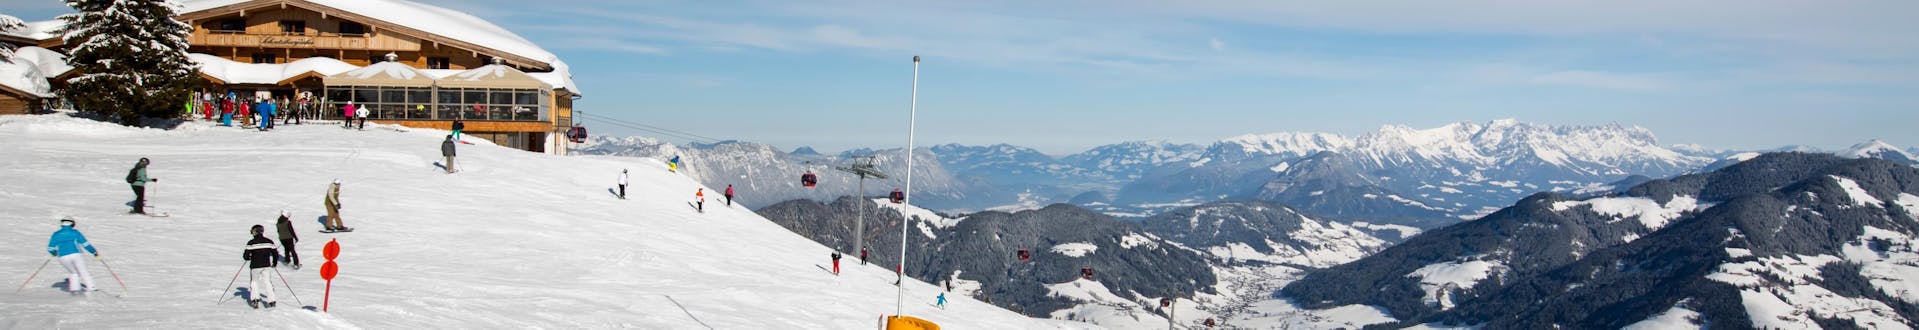 Adultos y niños esquiando en la estación de esquí de Wildschonau.